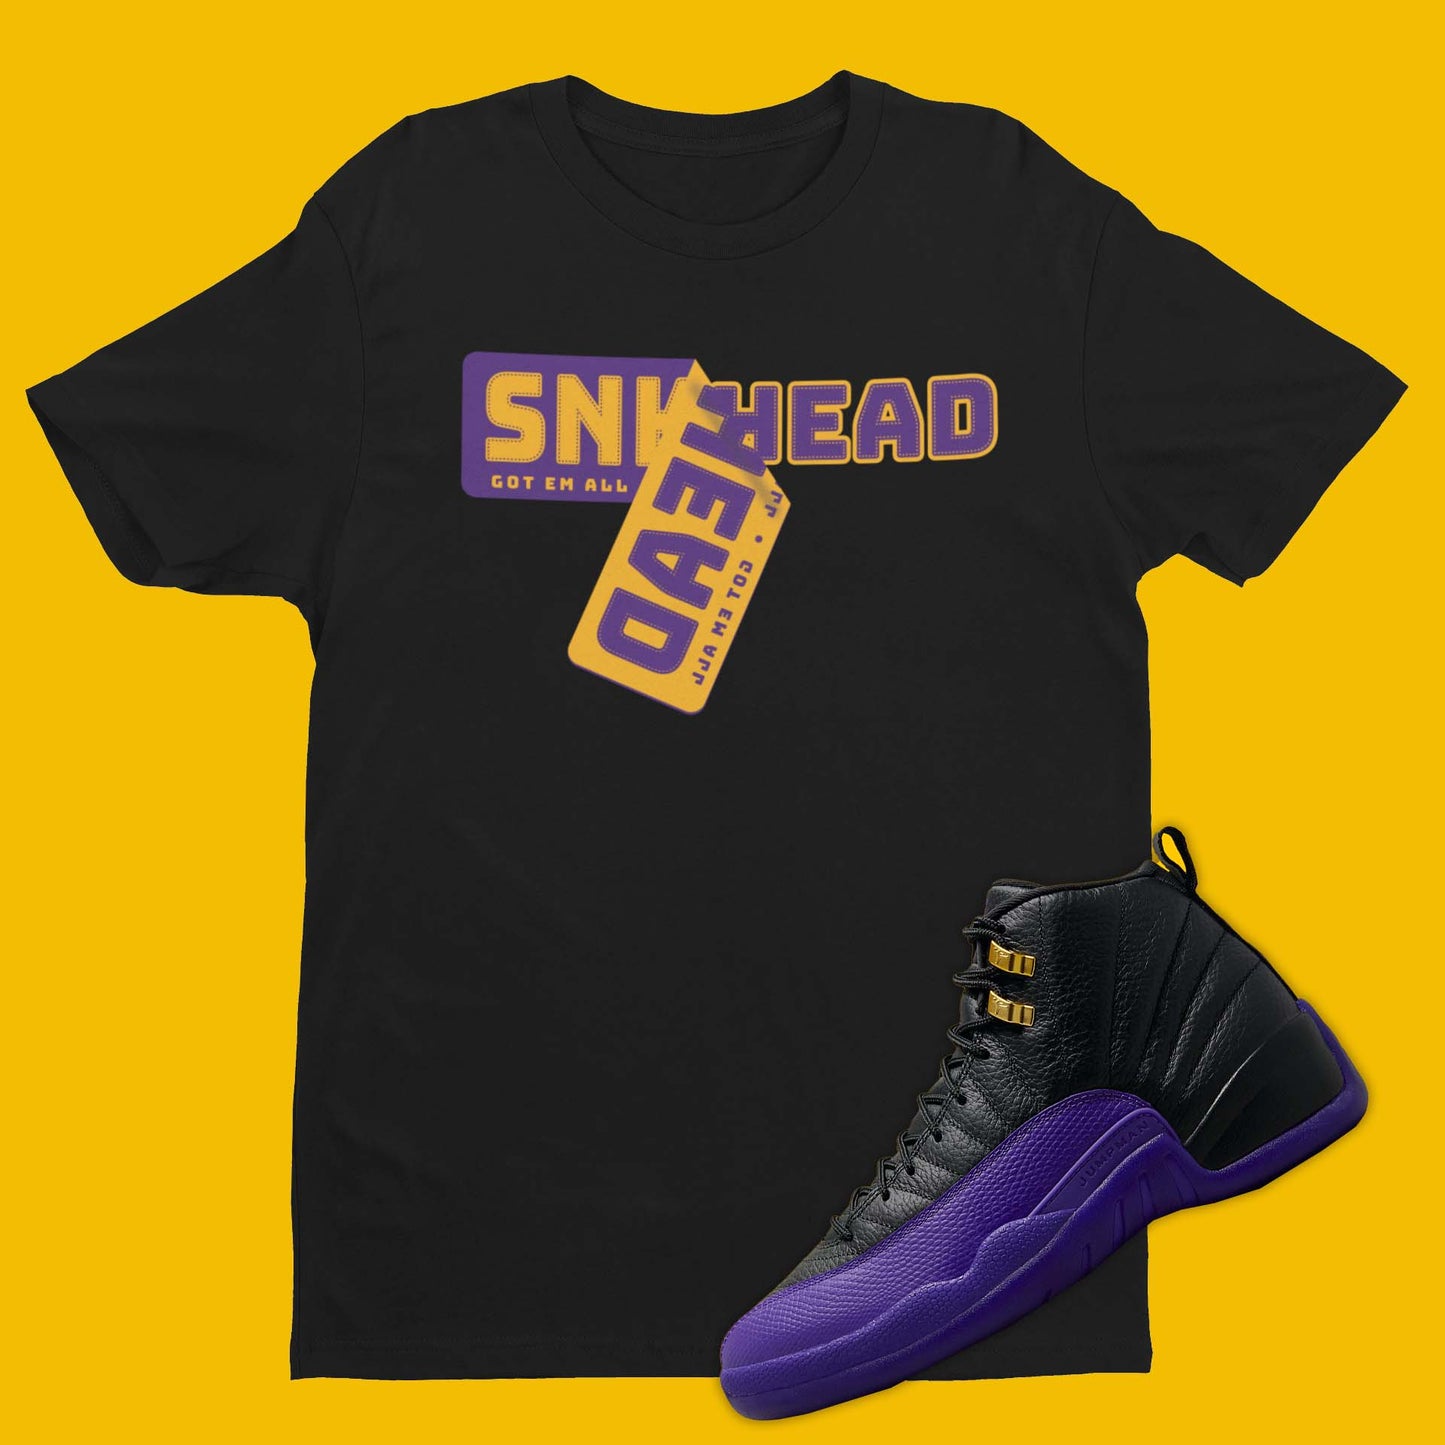 Sneaker Sticker Air Jordan 12 Field Purple Matching T-Shirt from SNKADX.